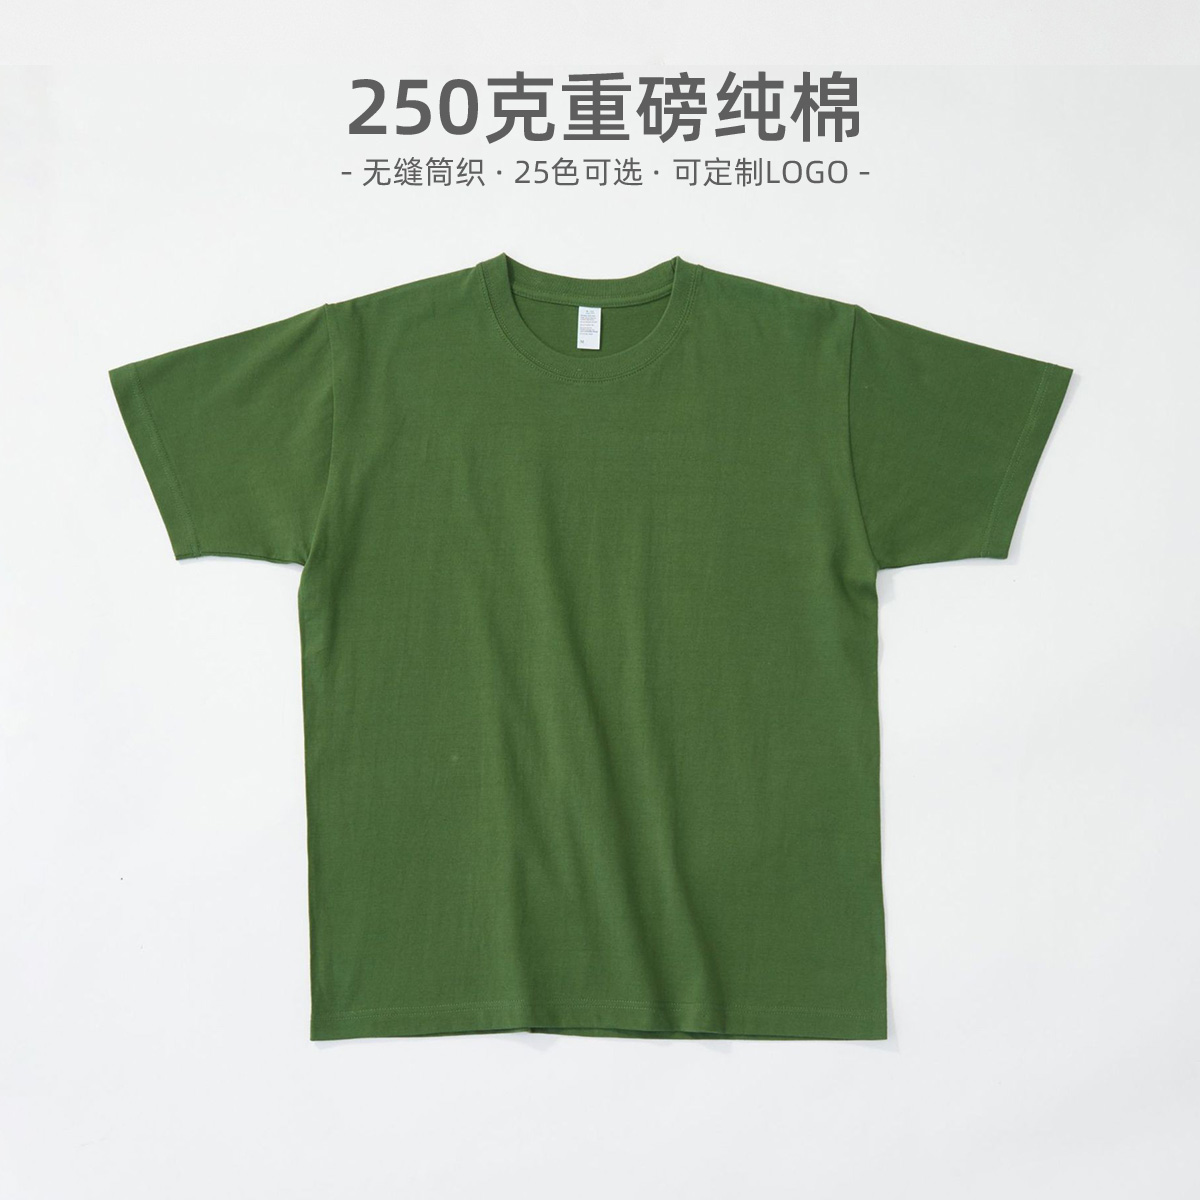 250克重磅纯棉短袖T恤小领口牛油果绿宽松打底衫印图刺绣logo定制